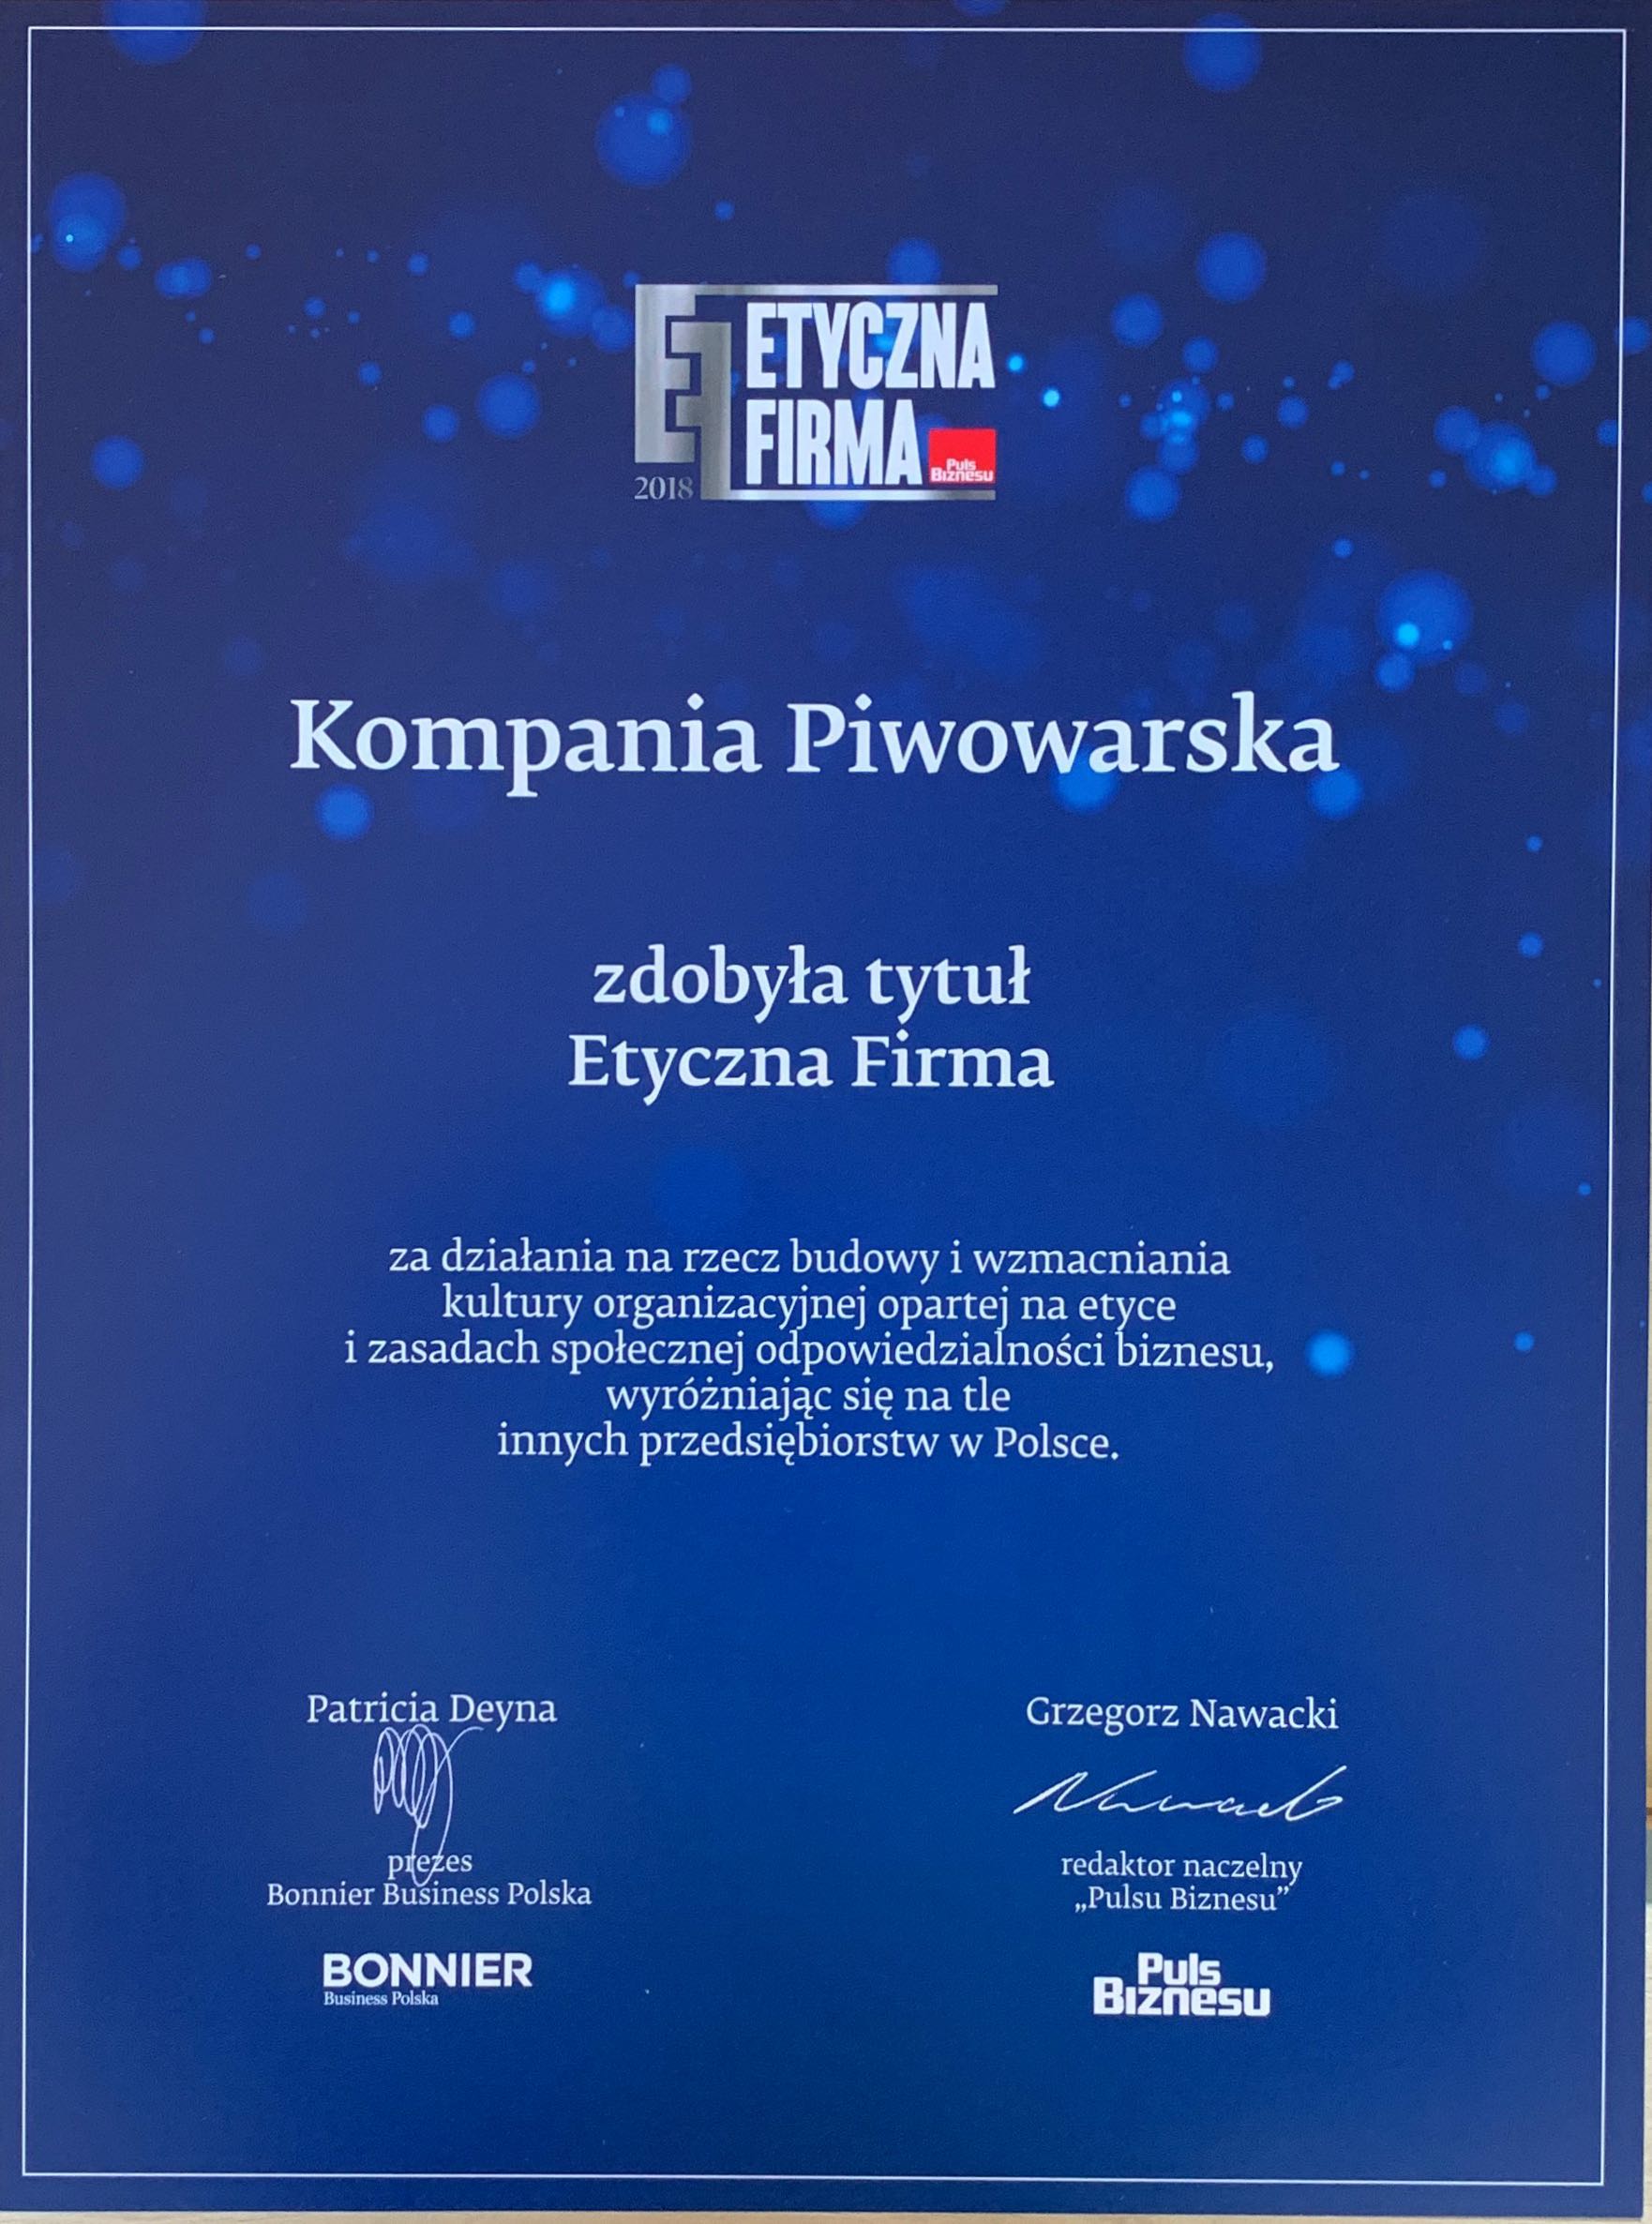 Kompania Piwowarska wśród laureatów konkursu Etyczna Firma 2018